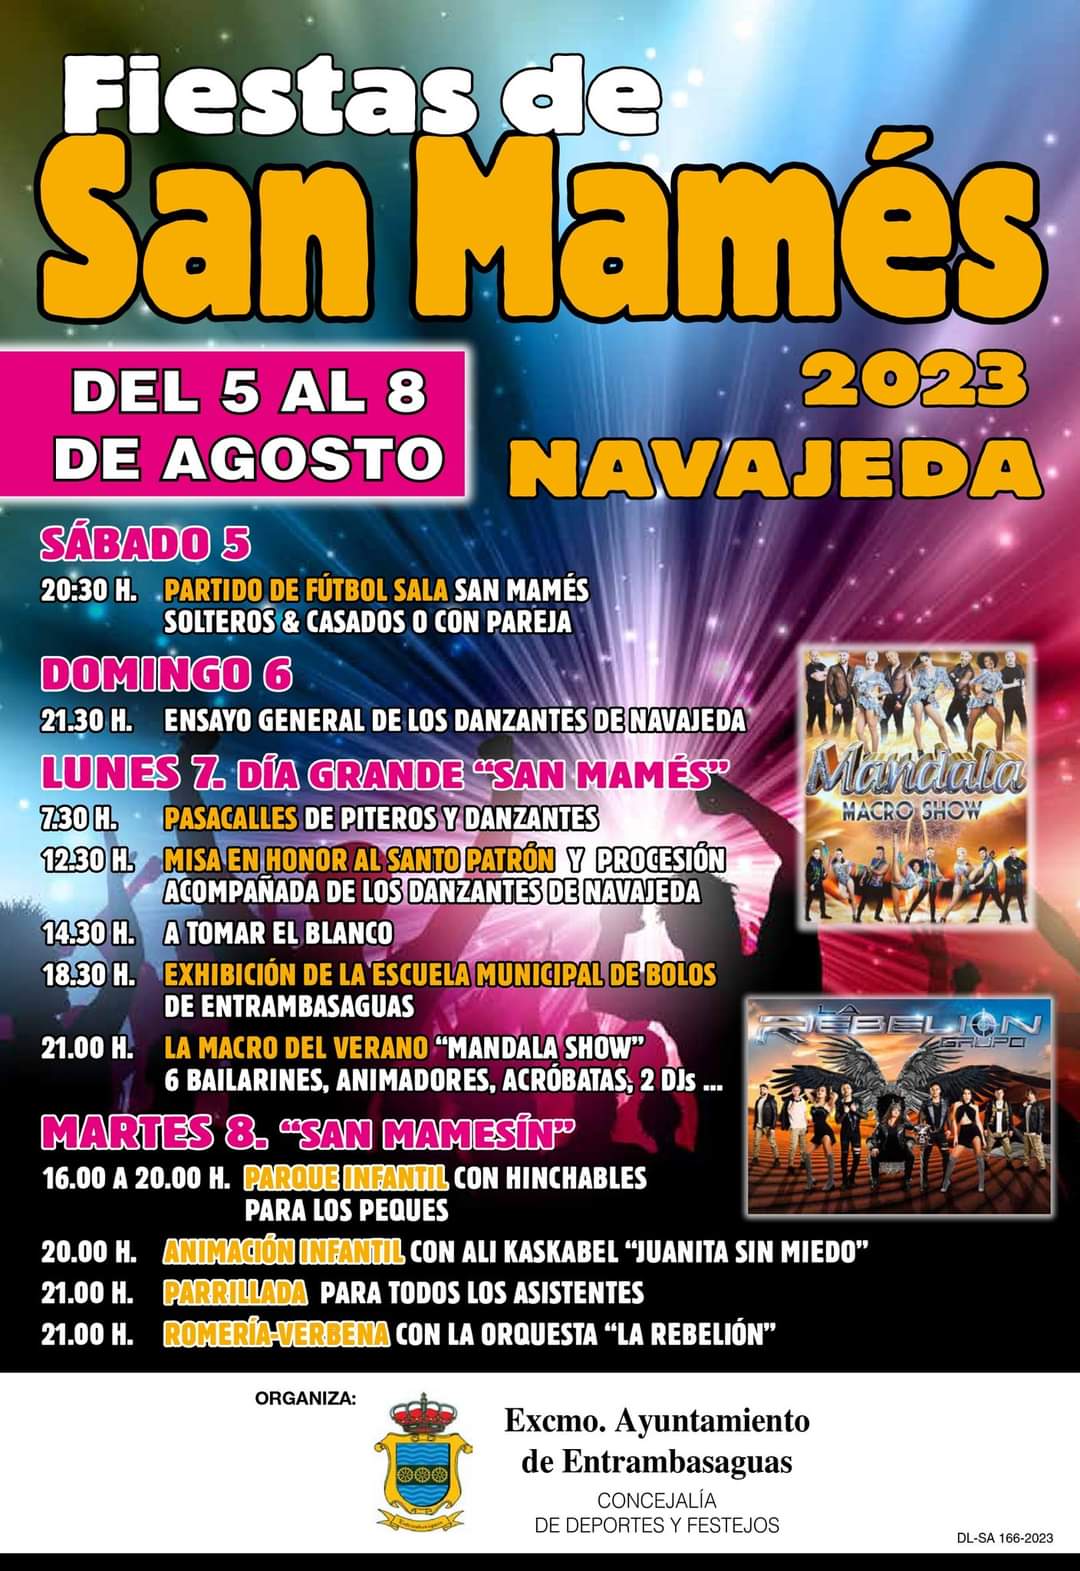 Fiestas de San Mamés Navajeda 2023